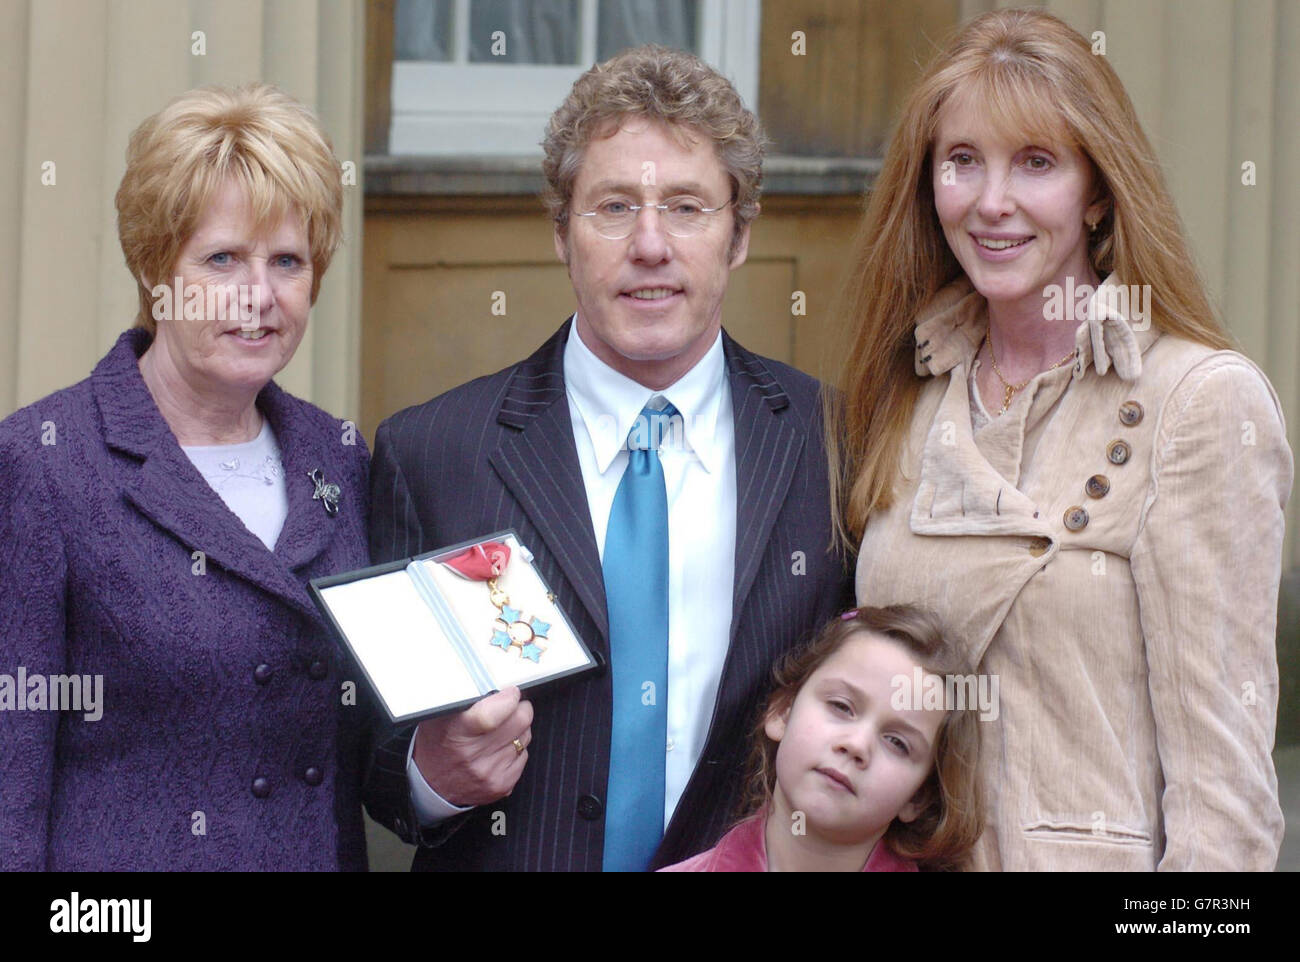 Roger Daltrey de l'OMS pose avec sa femme Heather (à droite), sa sœur Jill Dale (à gauche) et sa petite-fille Lily, 6 ans. Banque D'Images